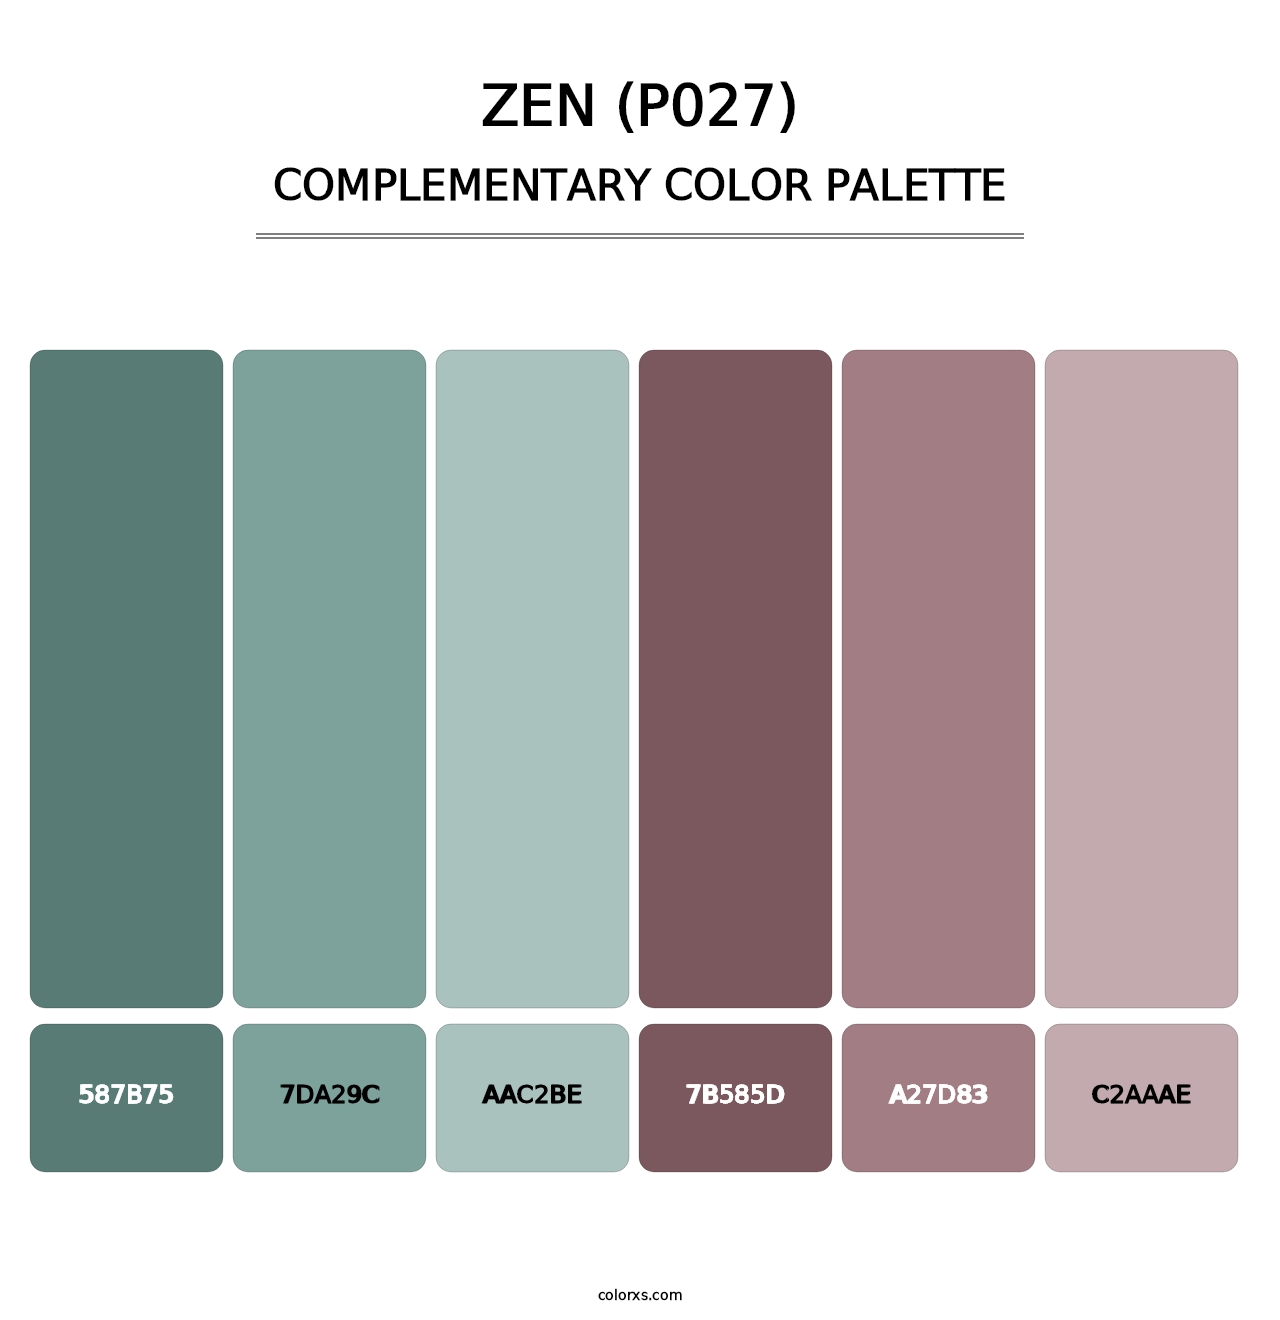 Zen (P027) - Complementary Color Palette